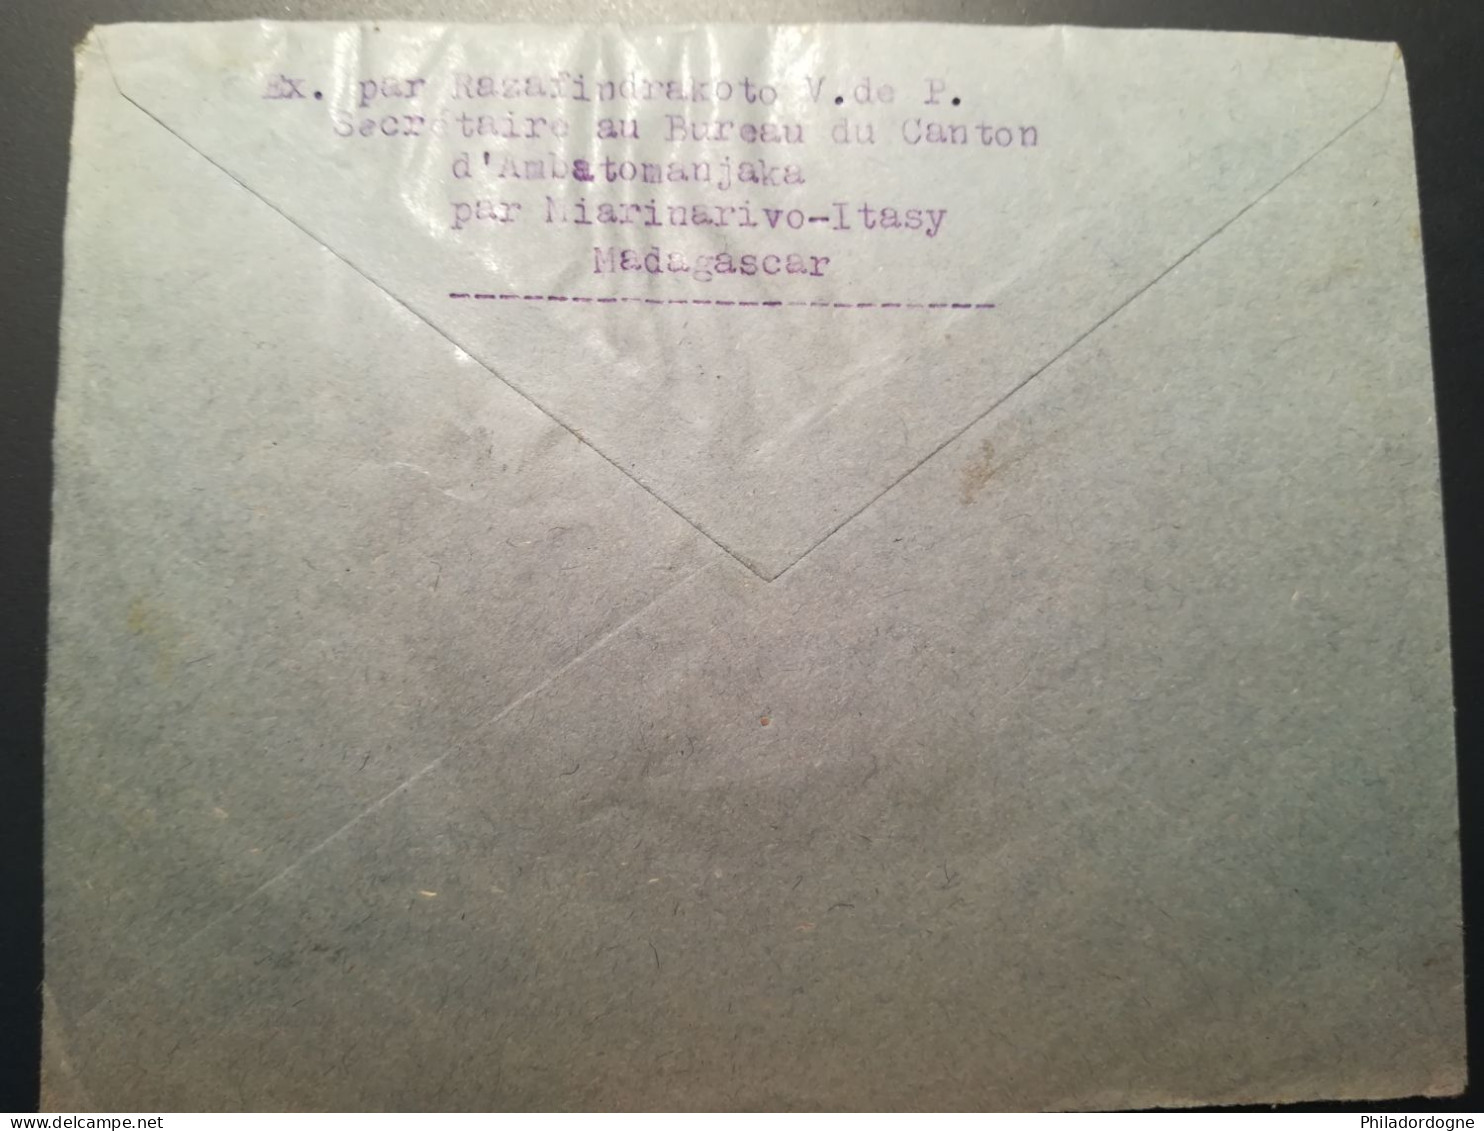 Madagascar - Lot De 48 Enveloppes à Trier (poids 89 Grammes) (Lot2) - Lettres & Documents